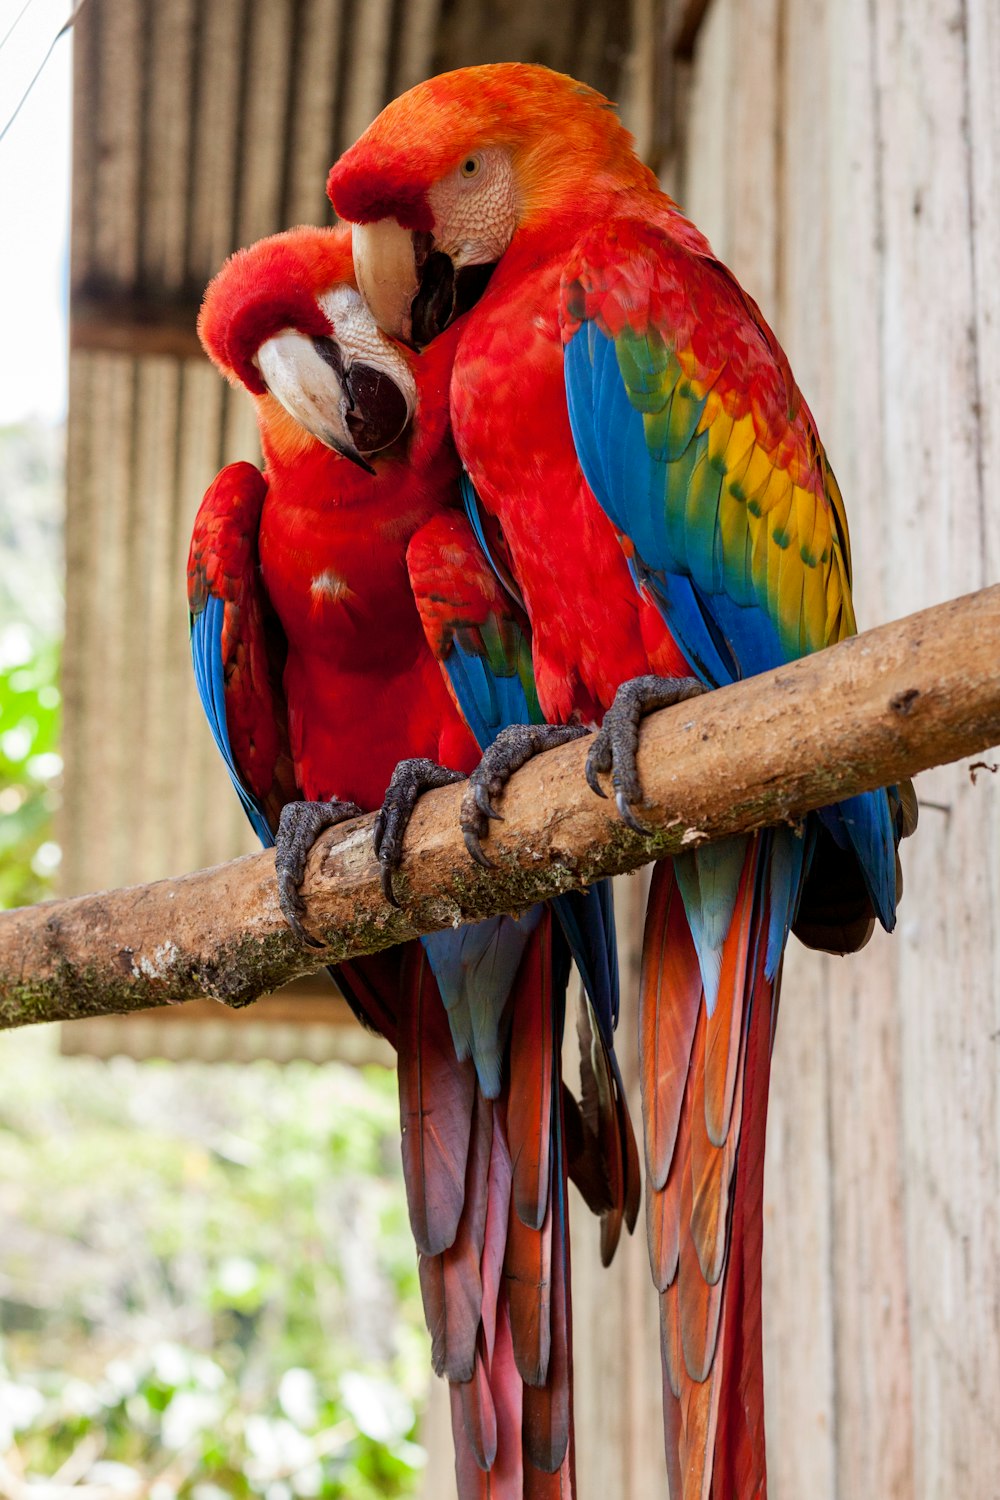 due pappagalli rossi su bastone